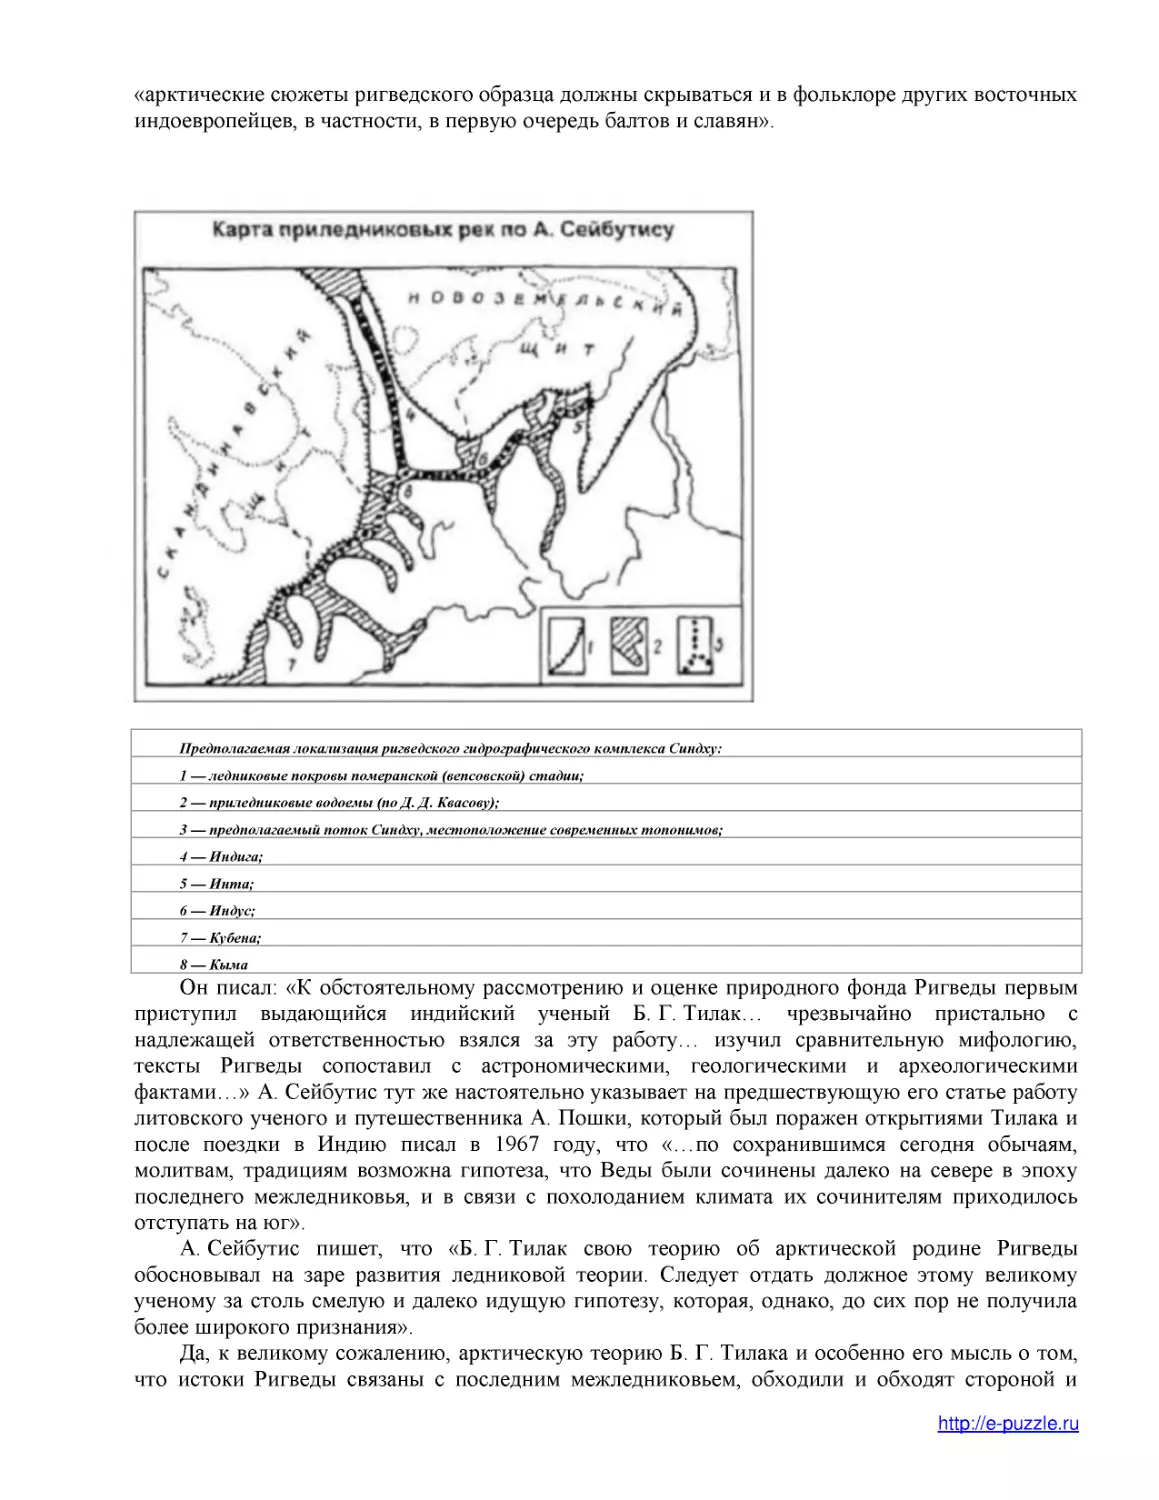 Предполагаемая локализация ригведского гидрографического комплекса Синдху
1 — ледниковые покровы померанской (вепсовской) стадии;
2 — приледниковые водоемы (по Д. Д. Квасову);
3 — предполагаемый поток Синдху, местоположение современных топонимов;
4 — Индига;
5 — Инта;
6 — Индус;
7 — Кубена;
8 — Кыма